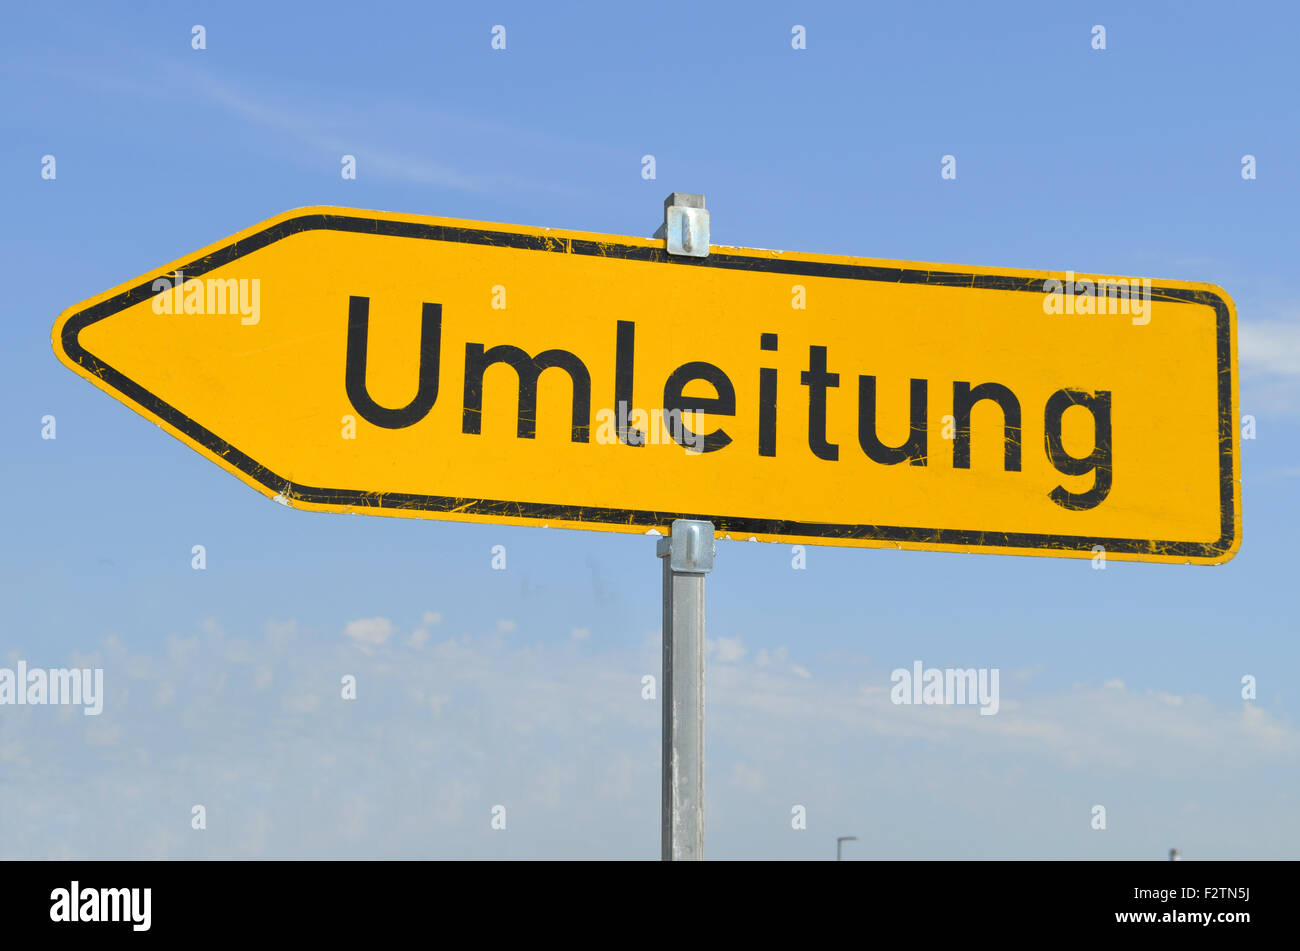 Umleitung, dérivation allemande signpost, contre un ciel bleu, Allemagne Banque D'Images